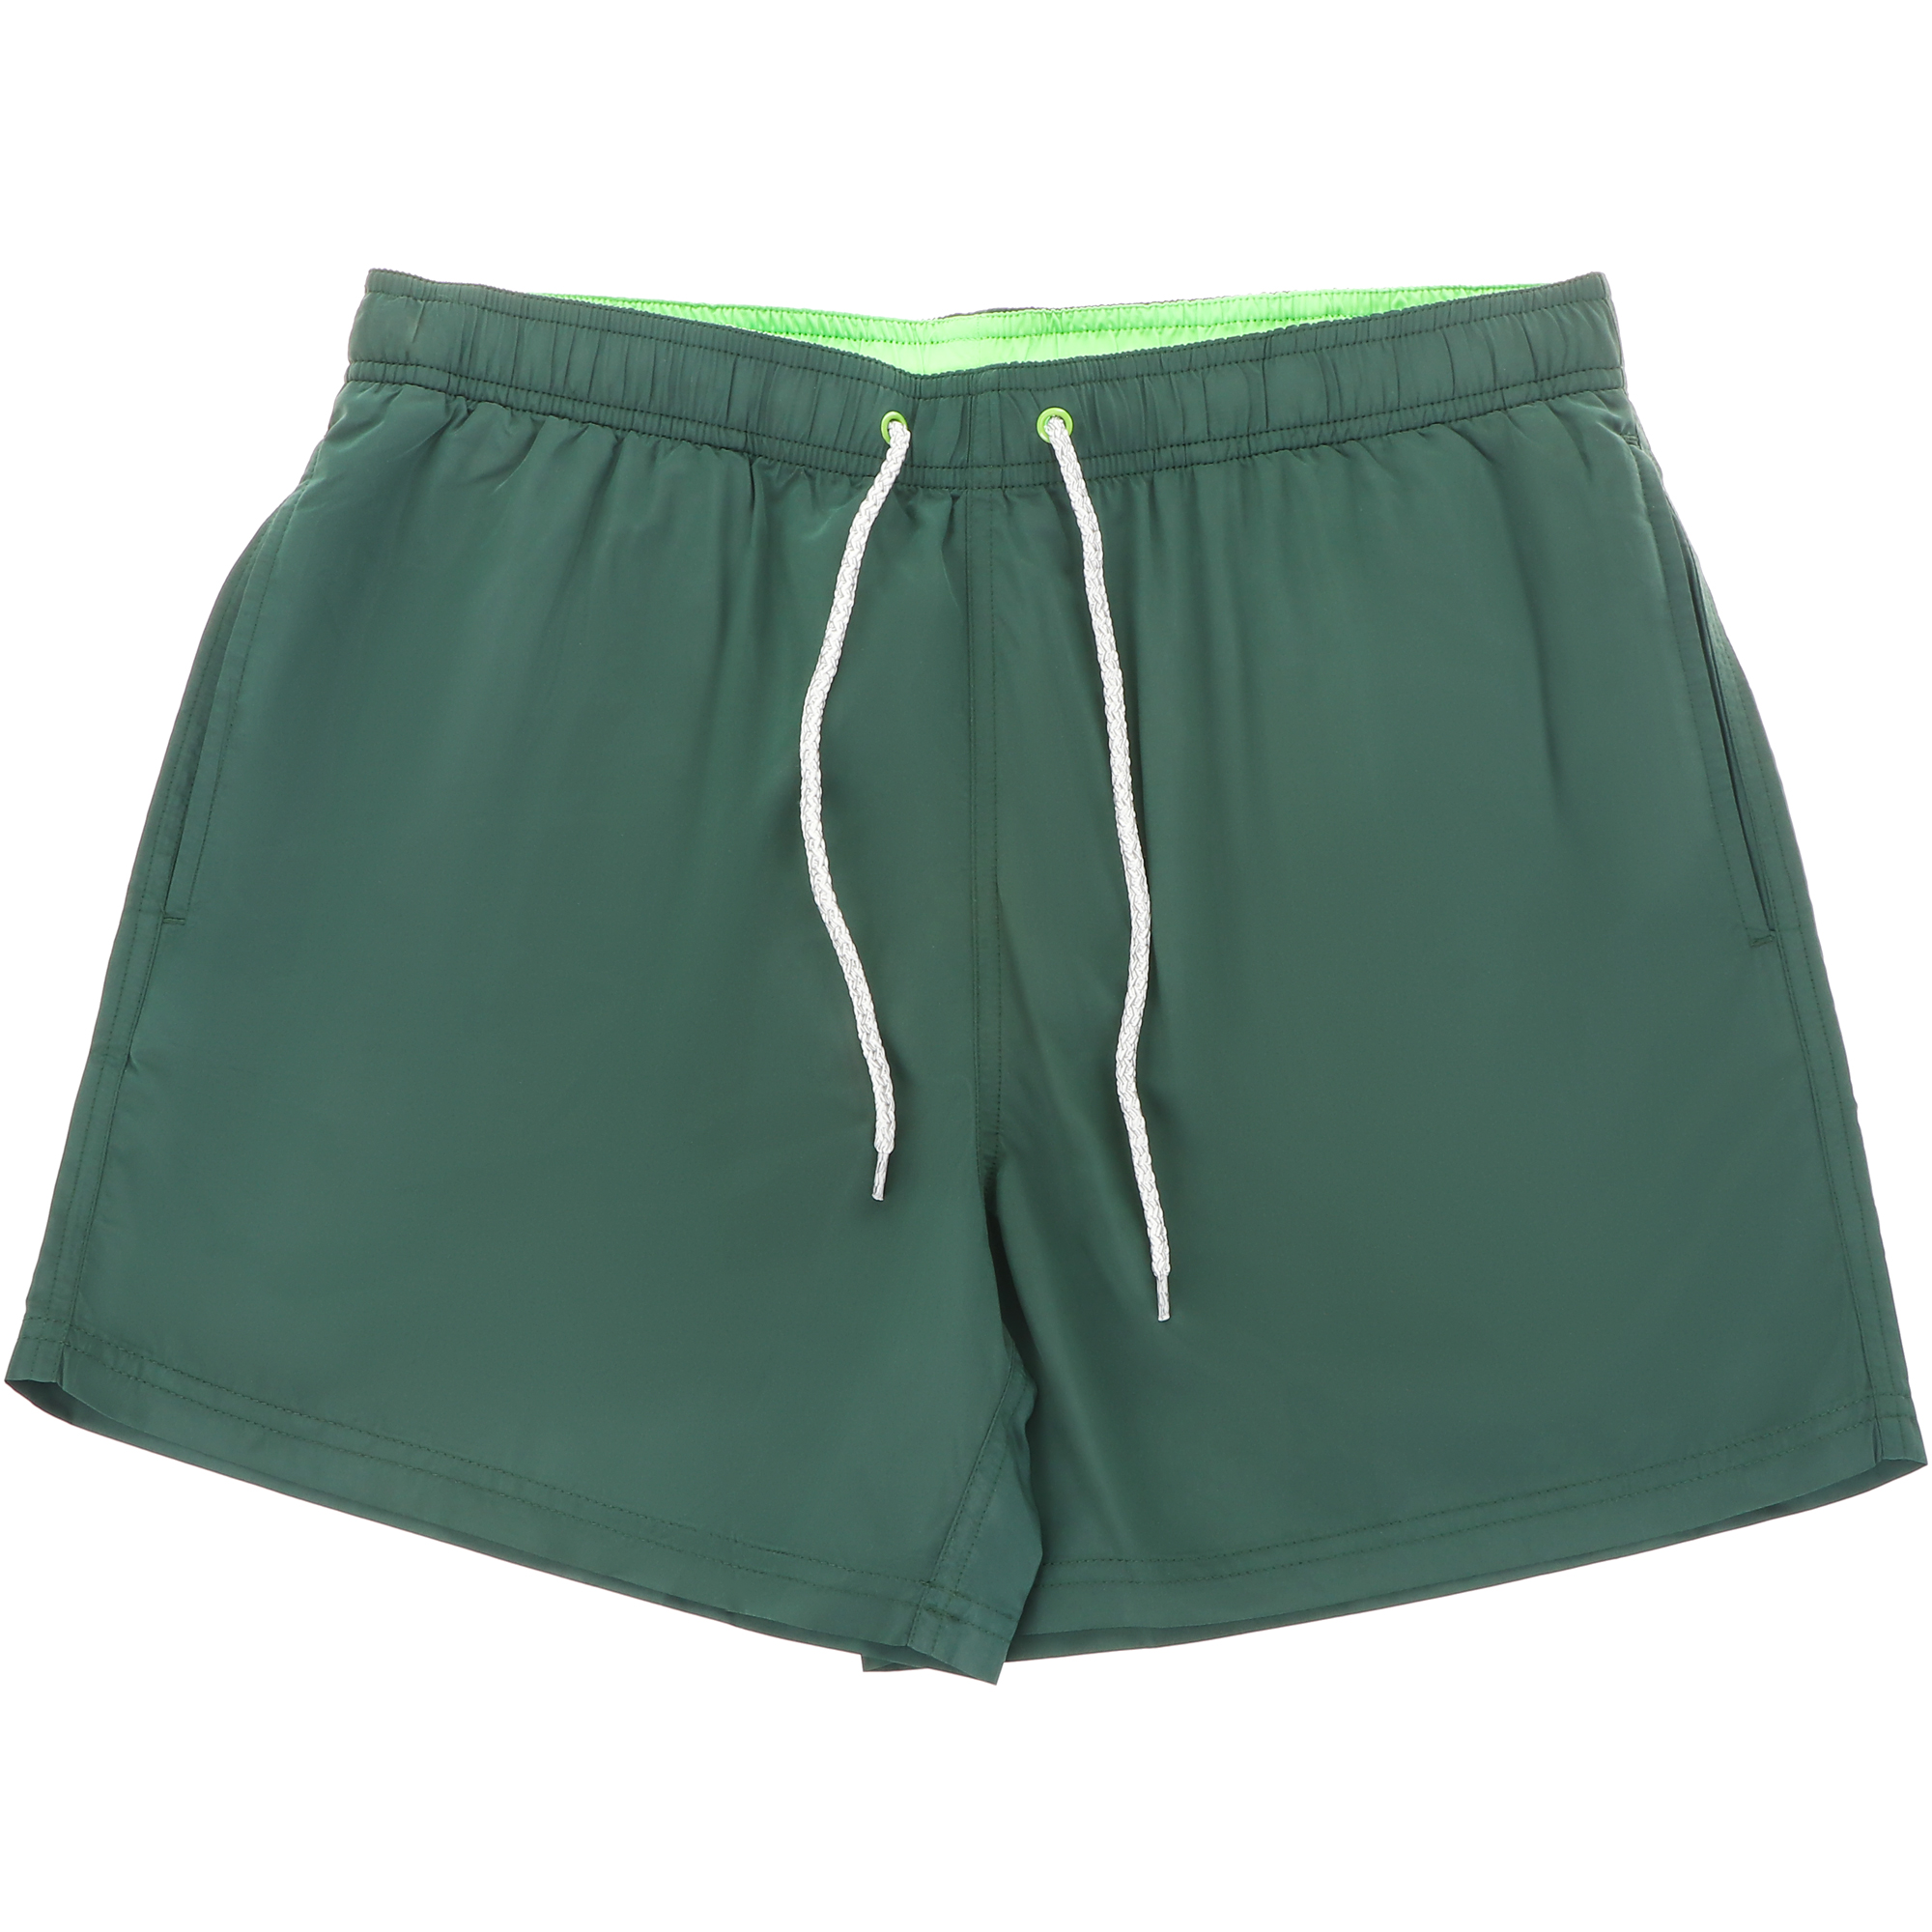 Мужские пляжные шорты Joyord зелёные, цвет зелёный, размер S - фото 1